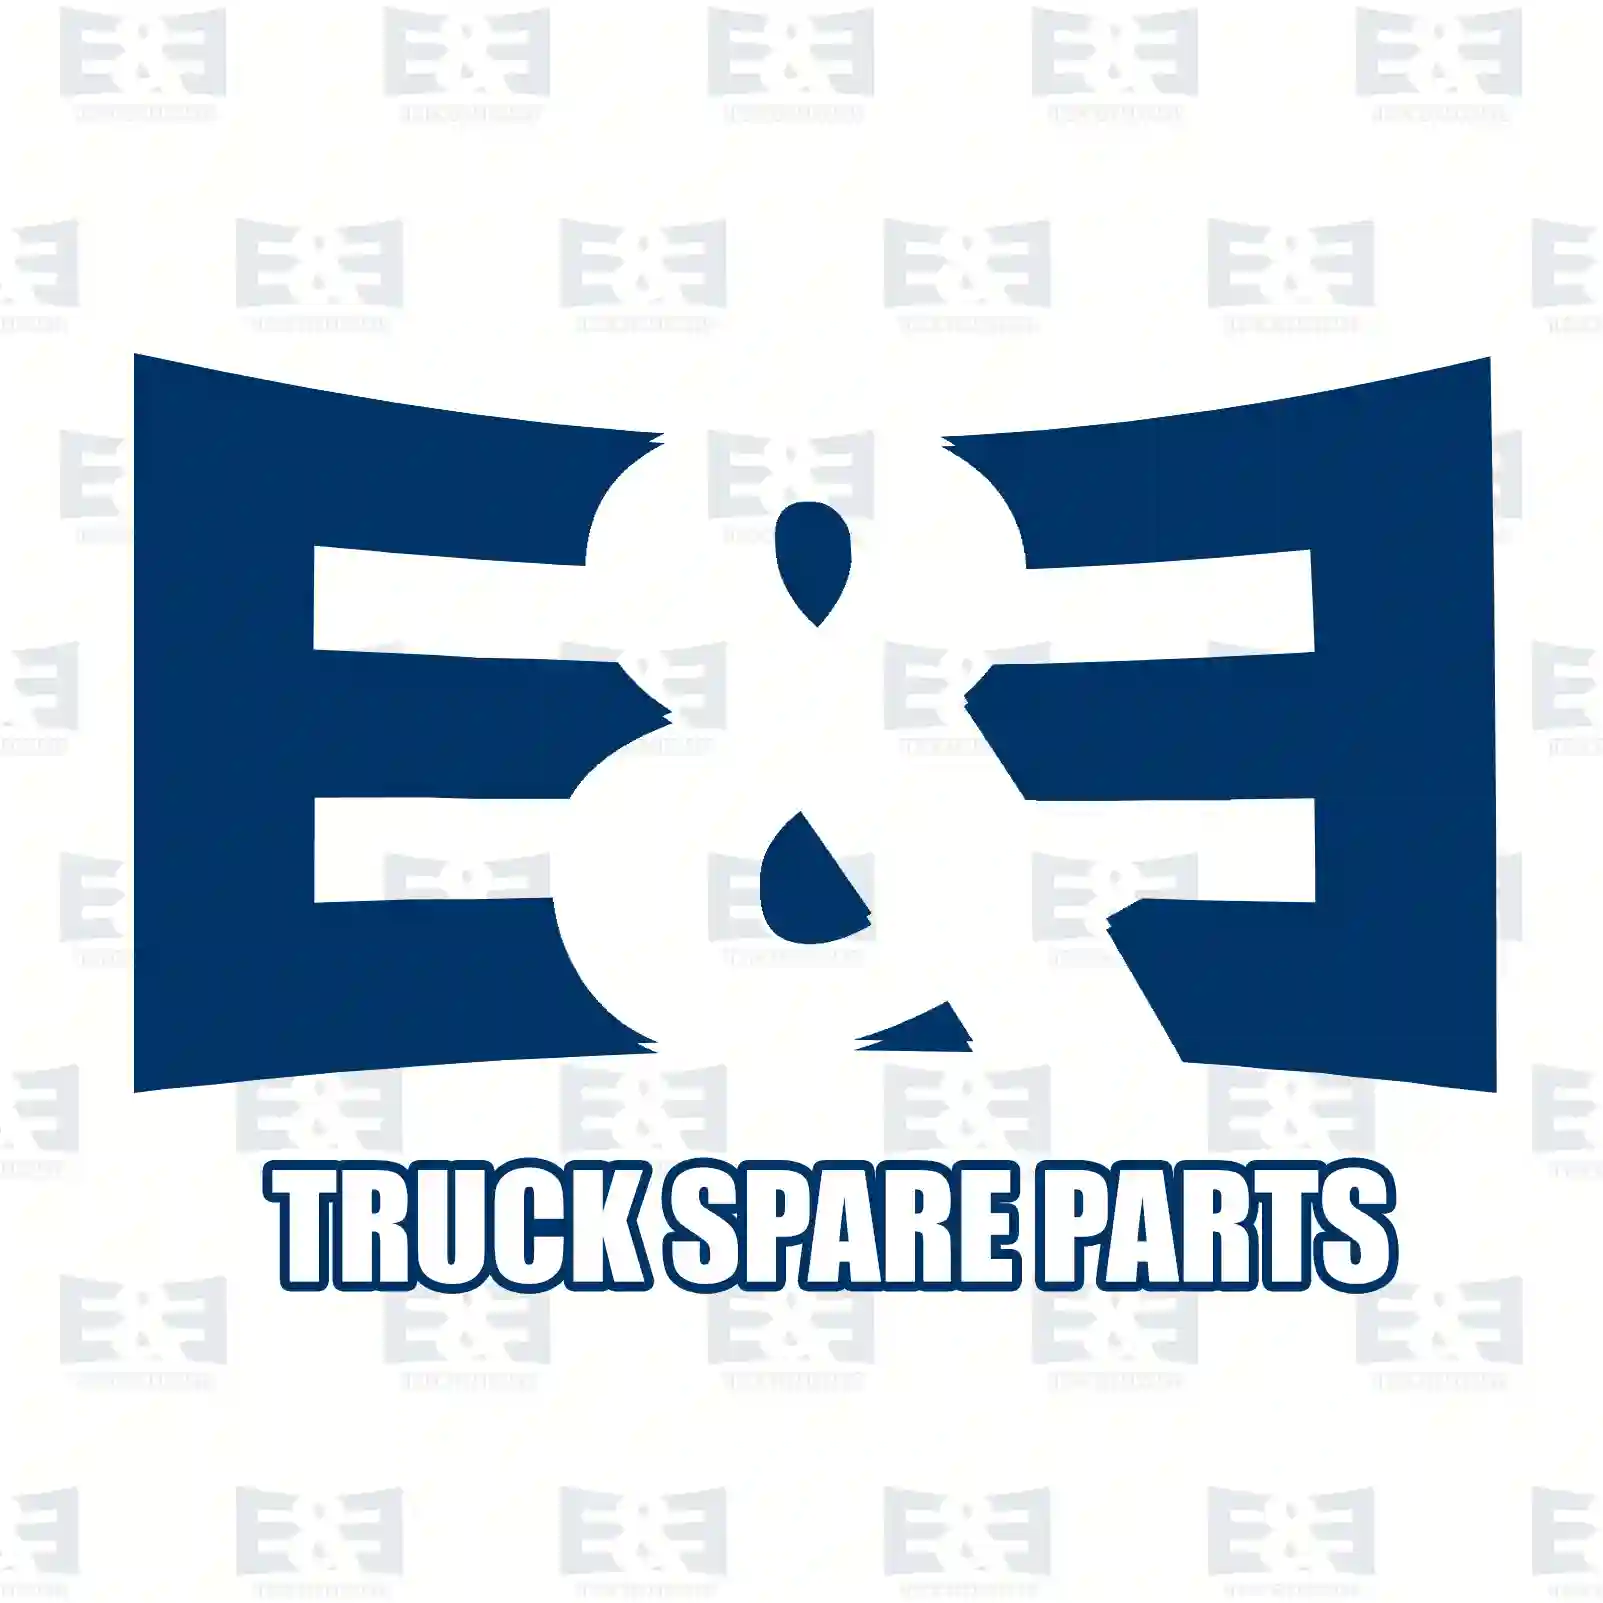 Drum brake lining kit, axle kit - oversize, 2E2295367, #YOK ||  2E2295367 E&E Truck Spare Parts | Truck Spare Parts, Auotomotive Spare Parts Drum brake lining kit, axle kit - oversize, 2E2295367, #YOK ||  2E2295367 E&E Truck Spare Parts | Truck Spare Parts, Auotomotive Spare Parts